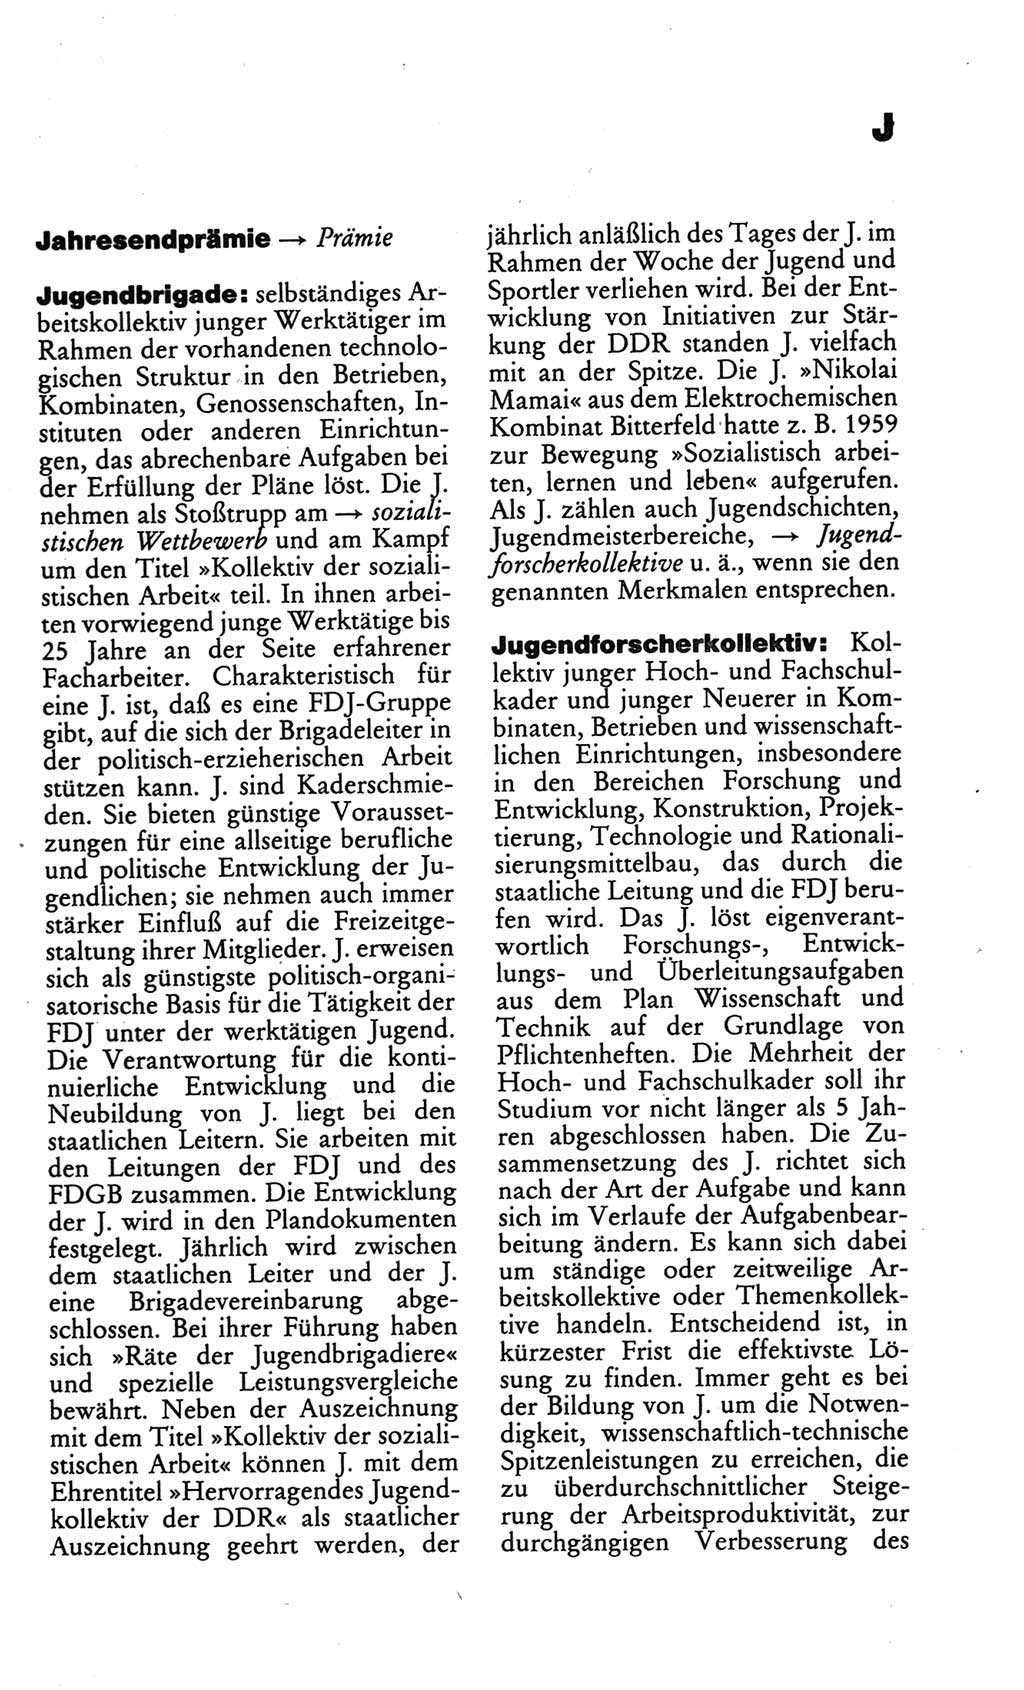 Kleines politisches Wörterbuch [Deutsche Demokratische Republik (DDR)] 1986, Seite 439 (Kl. pol. Wb. DDR 1986, S. 439)